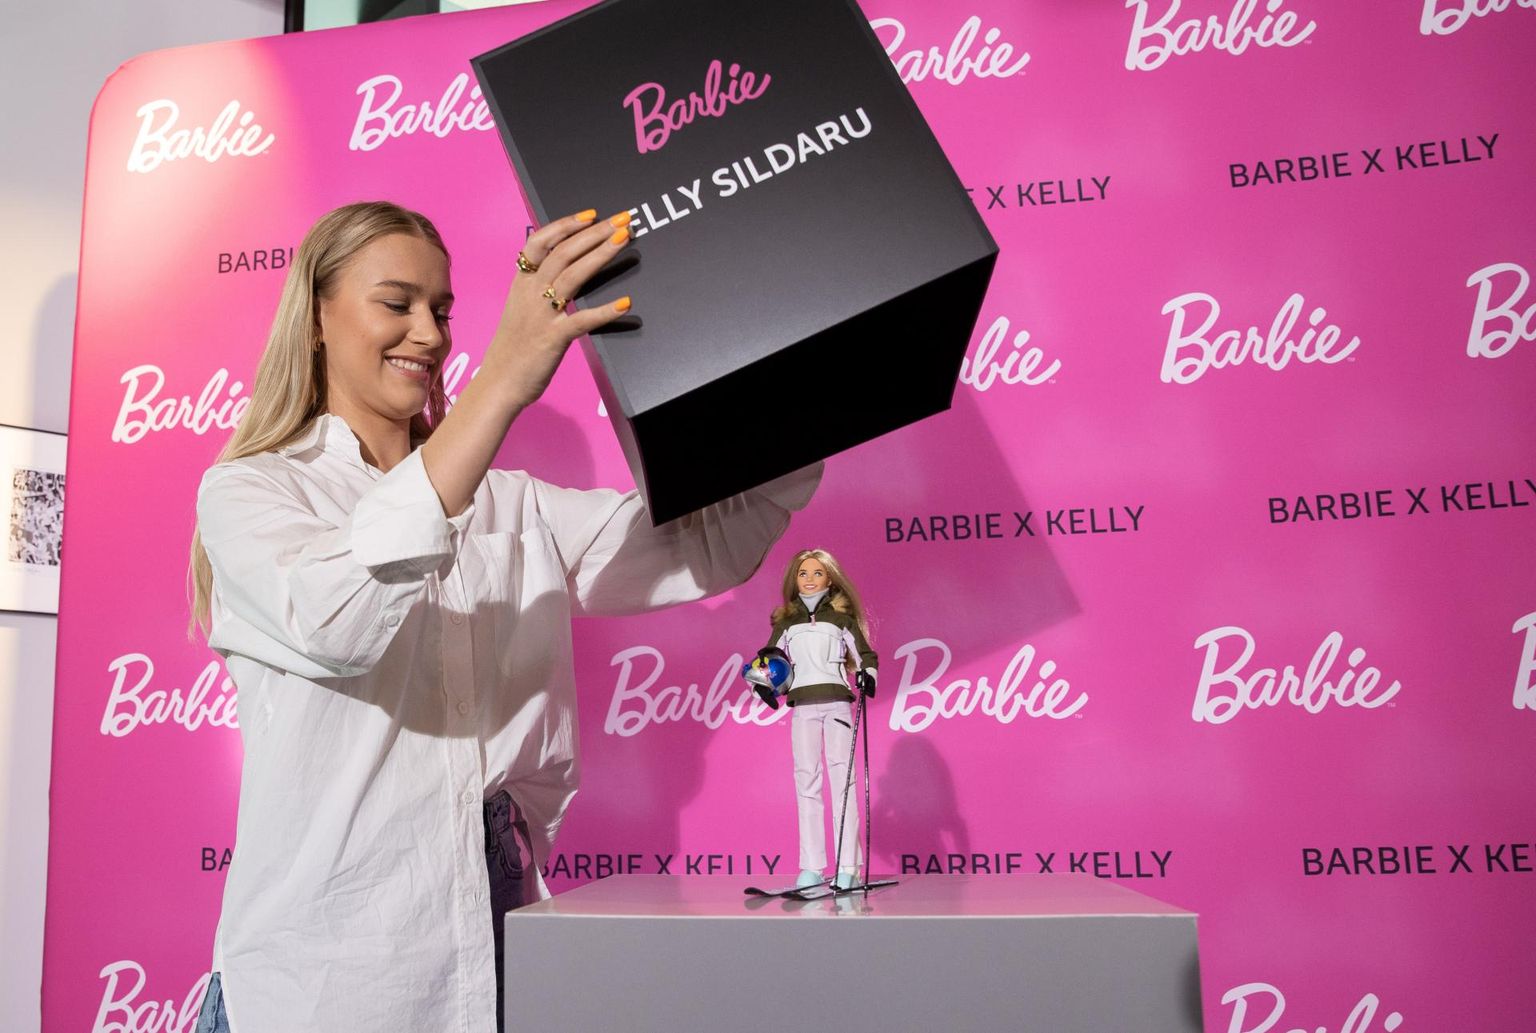 Maailmakuulus kaubamärk Barbie valmistas Eesti vigursuusatamise maailmameistri Kelly Sildaru järgi Barbie-nuku.